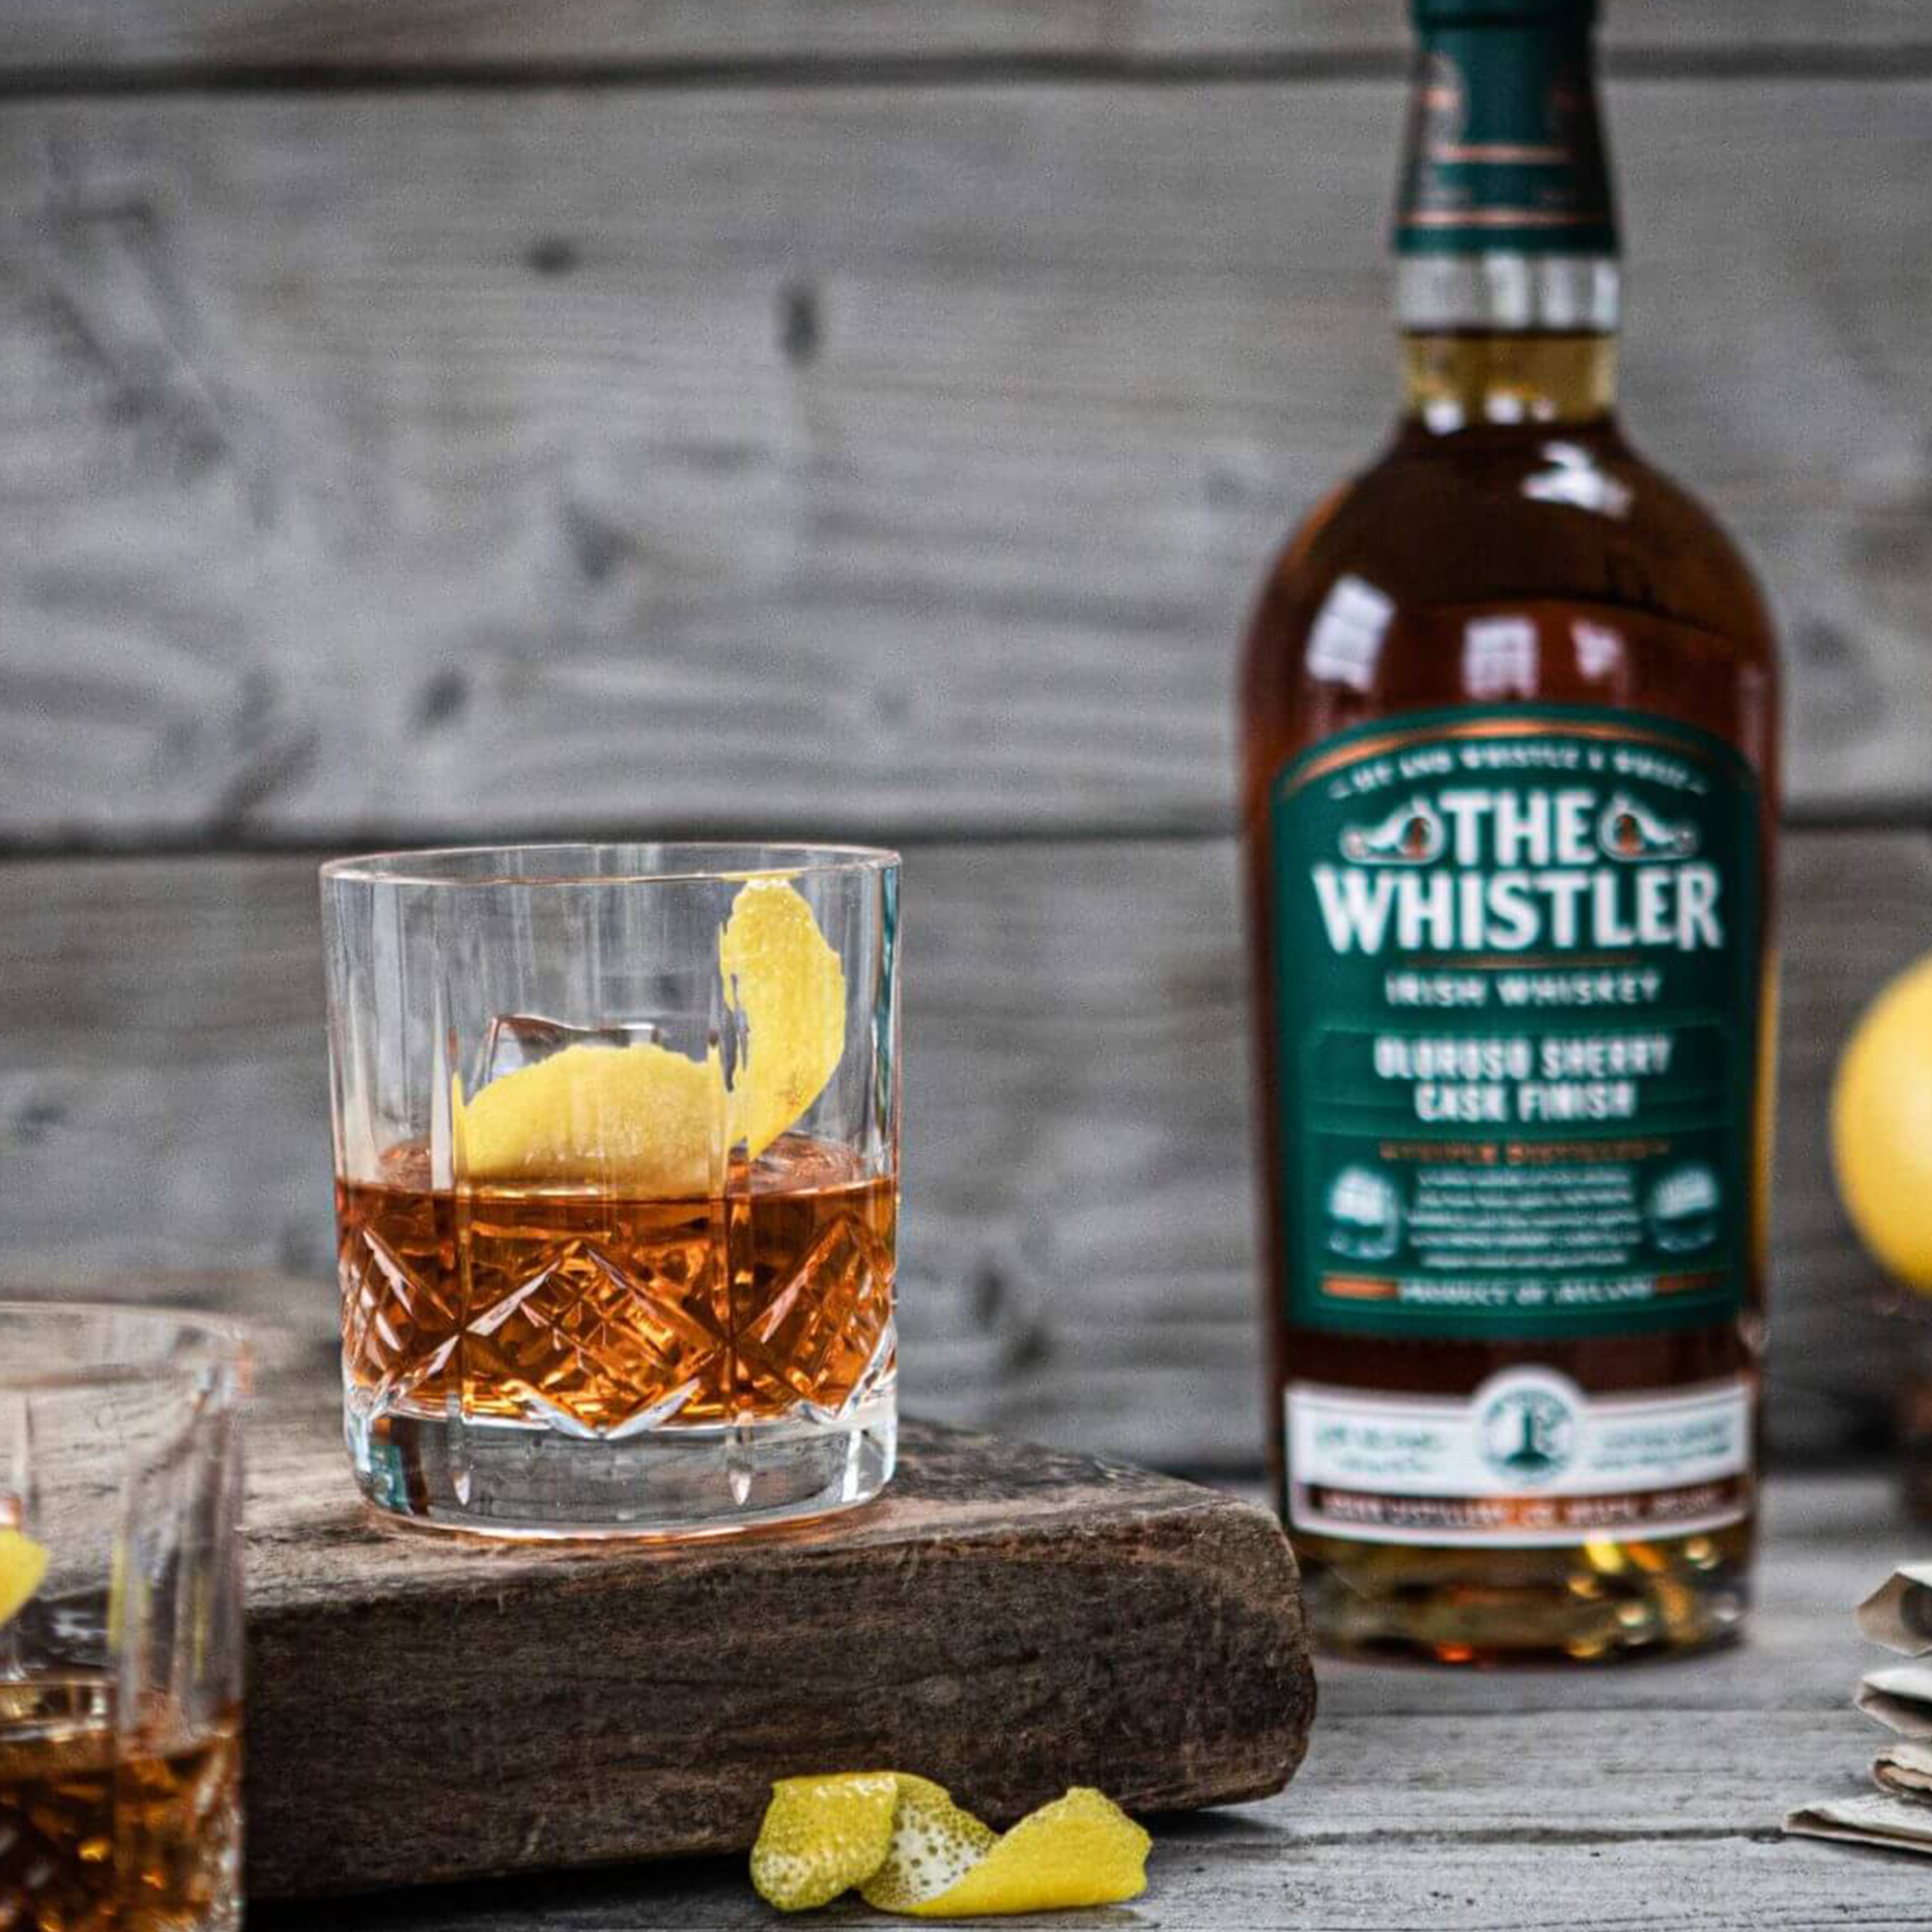 The Whistler Oloroso Sherry Cask Finish Irish Whiskey